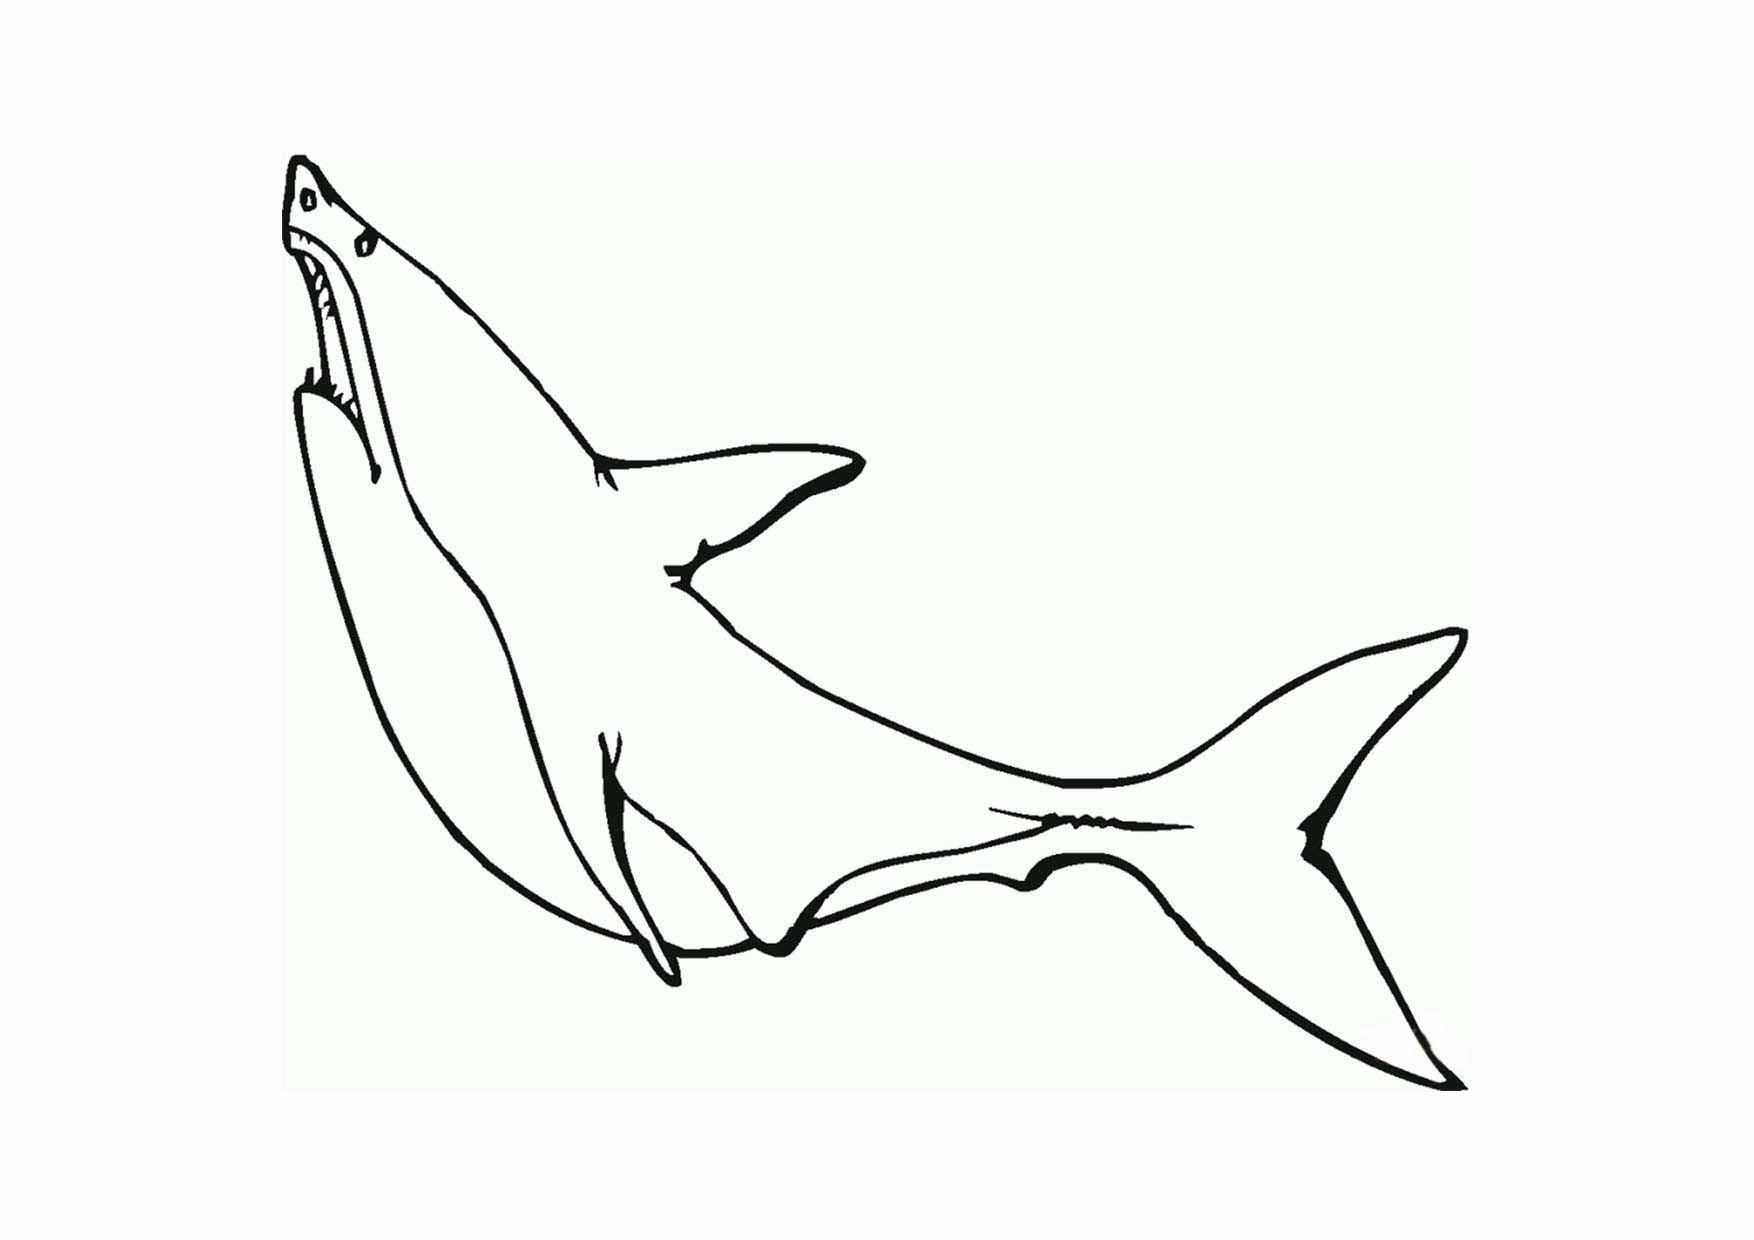 Tranh tô màu cá mập đơn giản